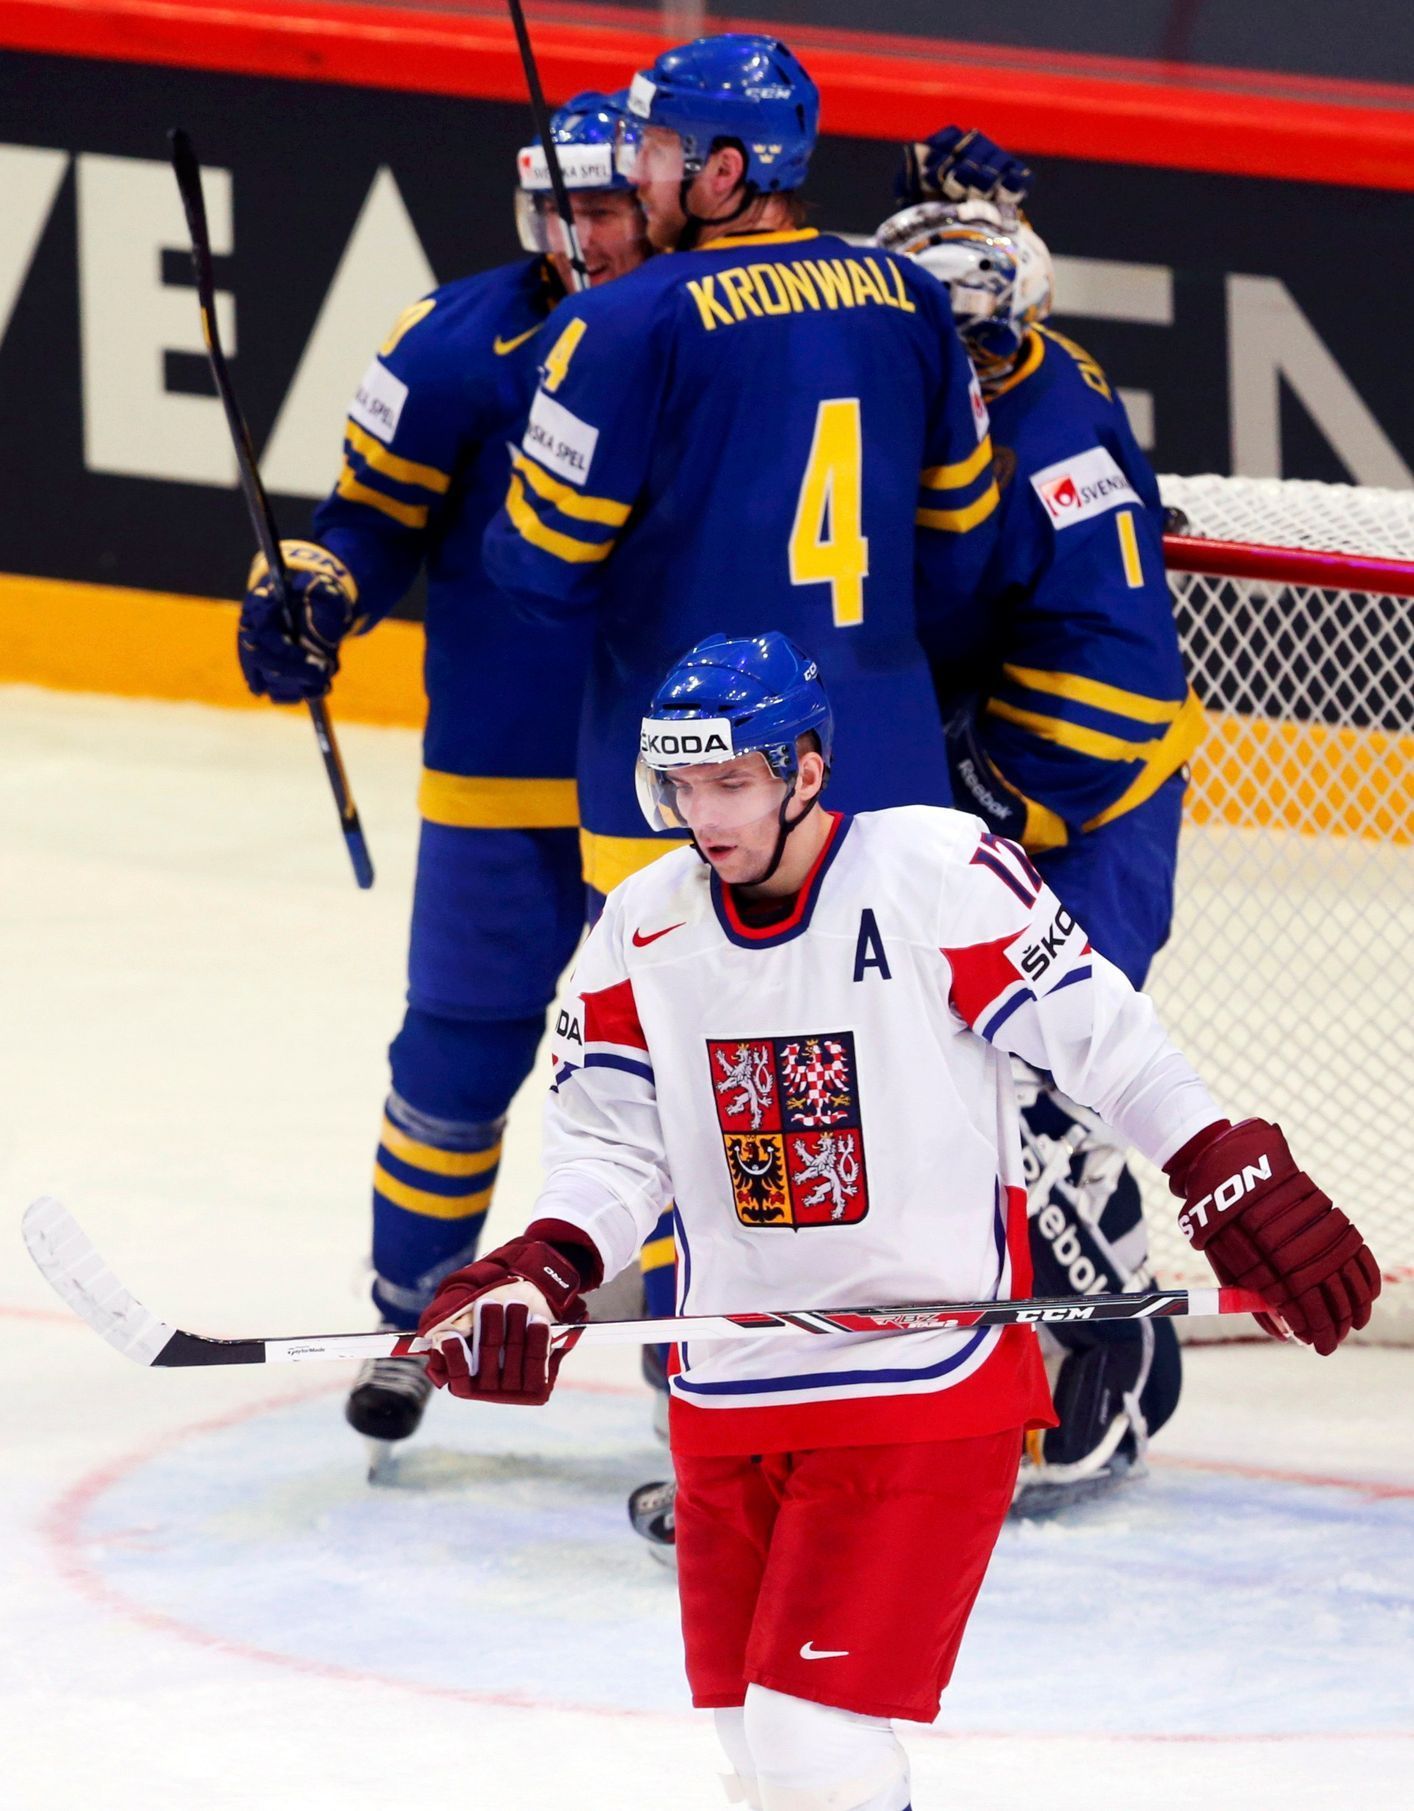 MS v hokeji 2013, Česko - Švédsko: Radim Vrbata